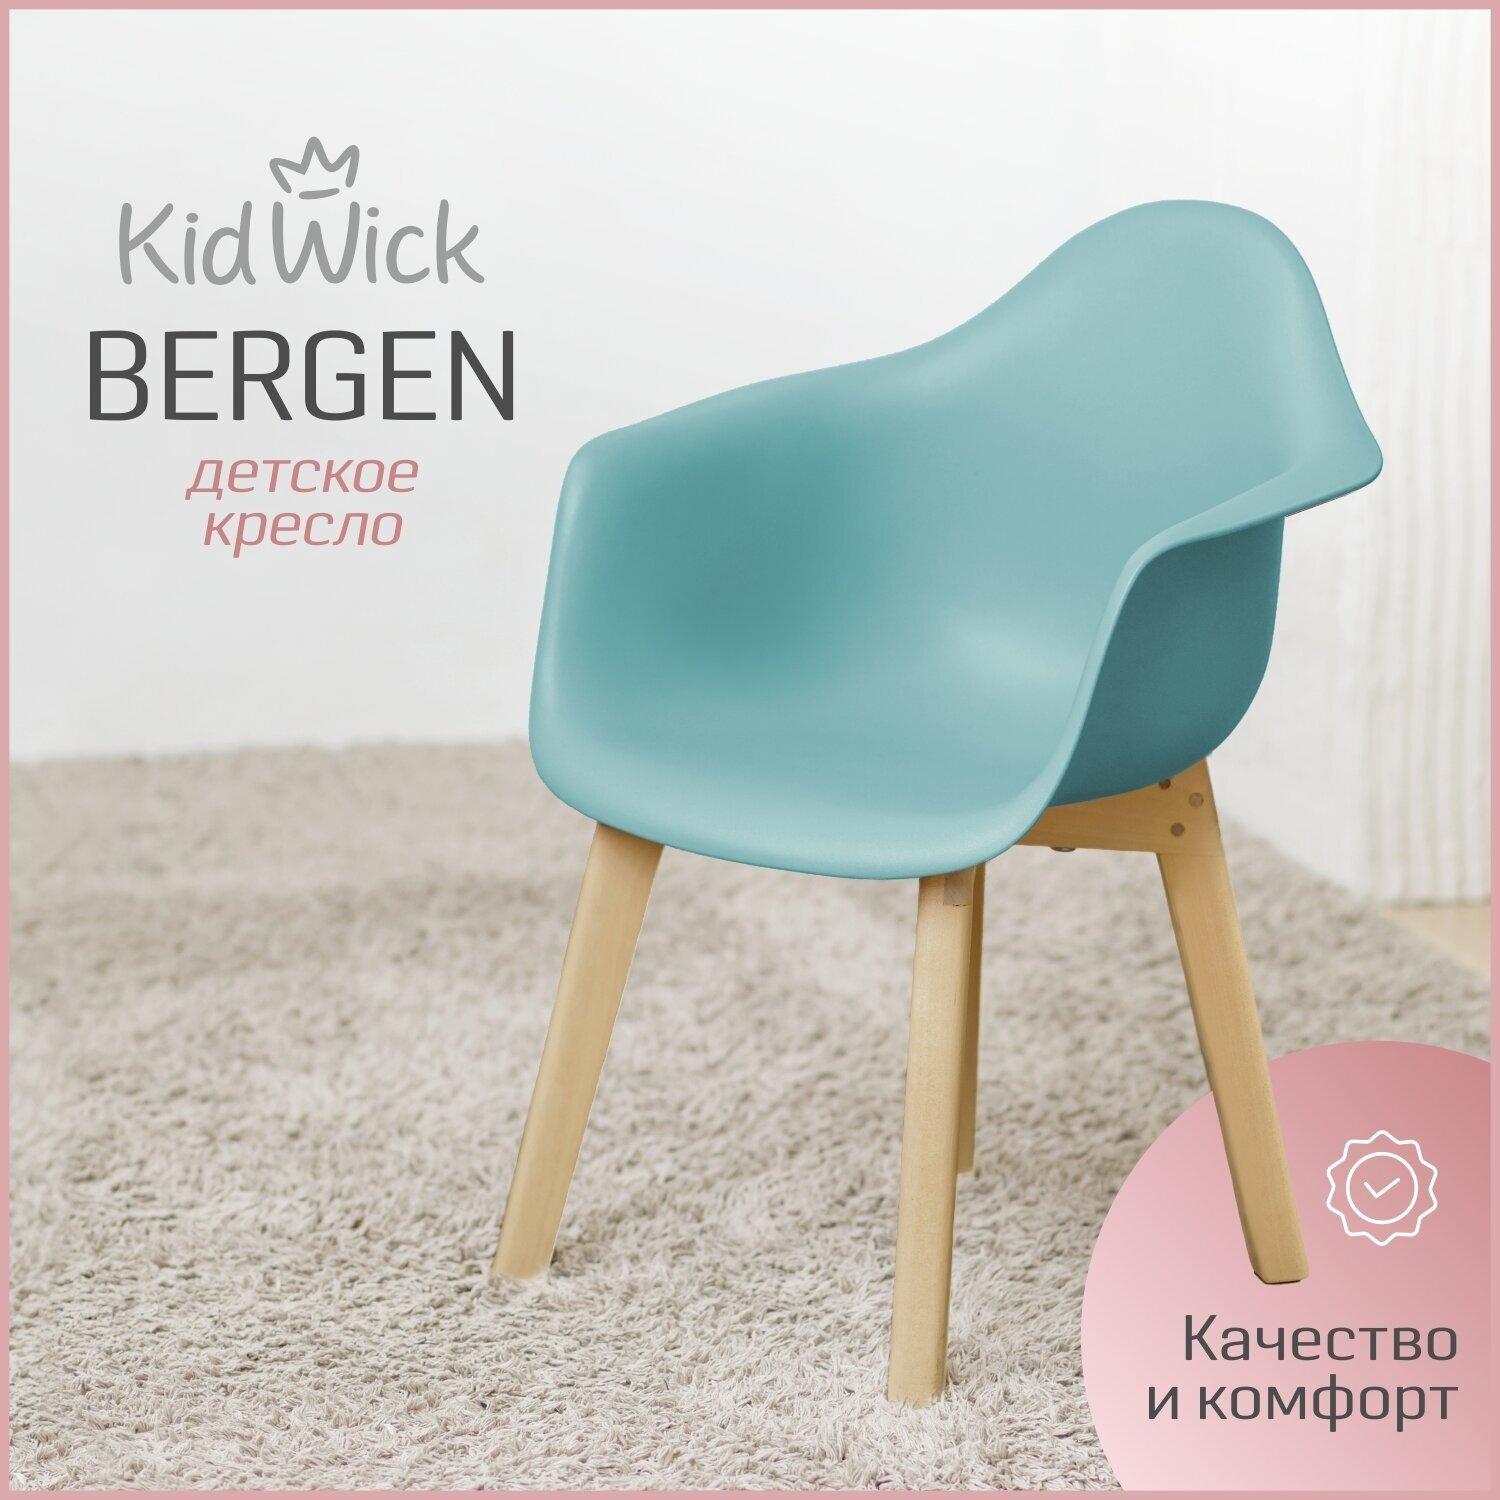 Кресло детское, детский стульчик Kidwick со спинкой «Bergen», бирюзовое